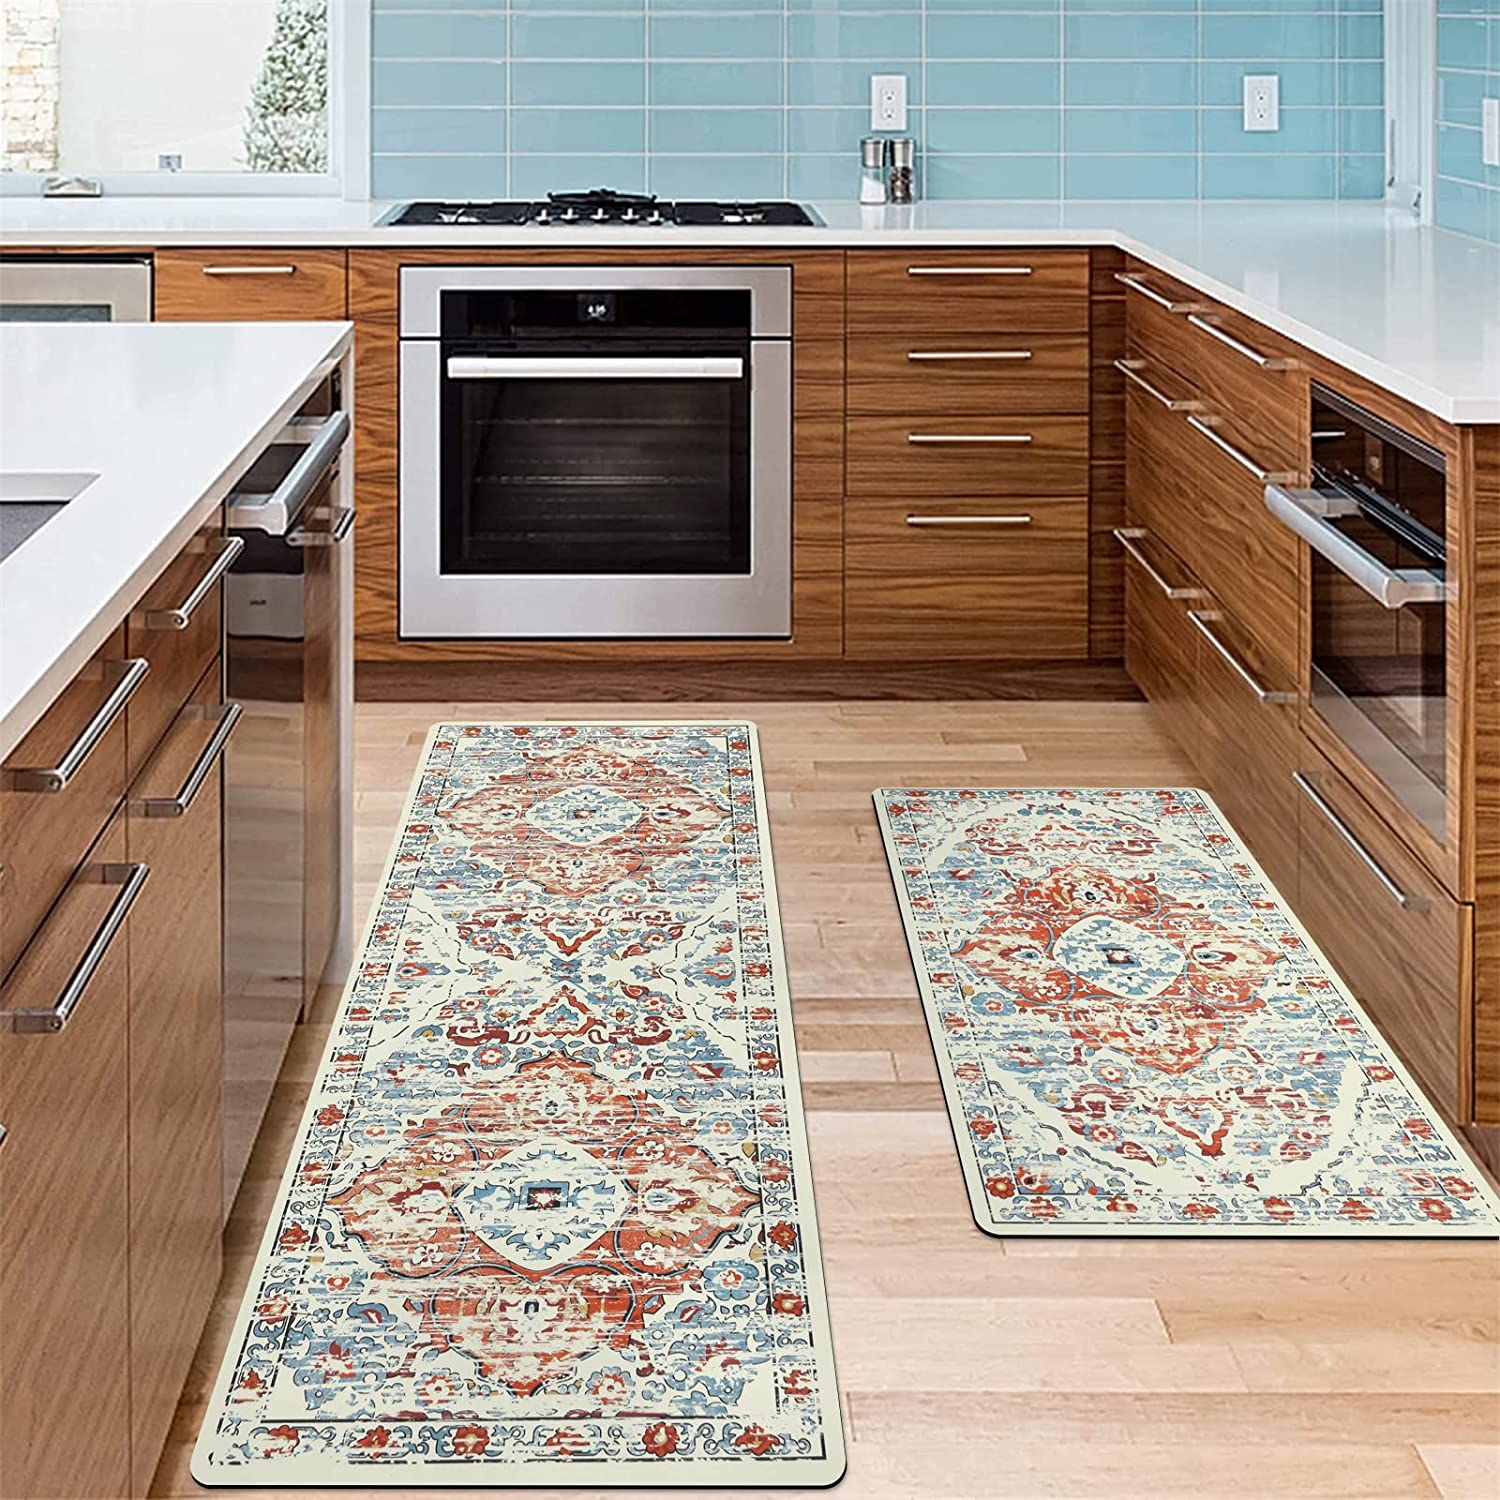 Custom 3 piece kitchen rug sets